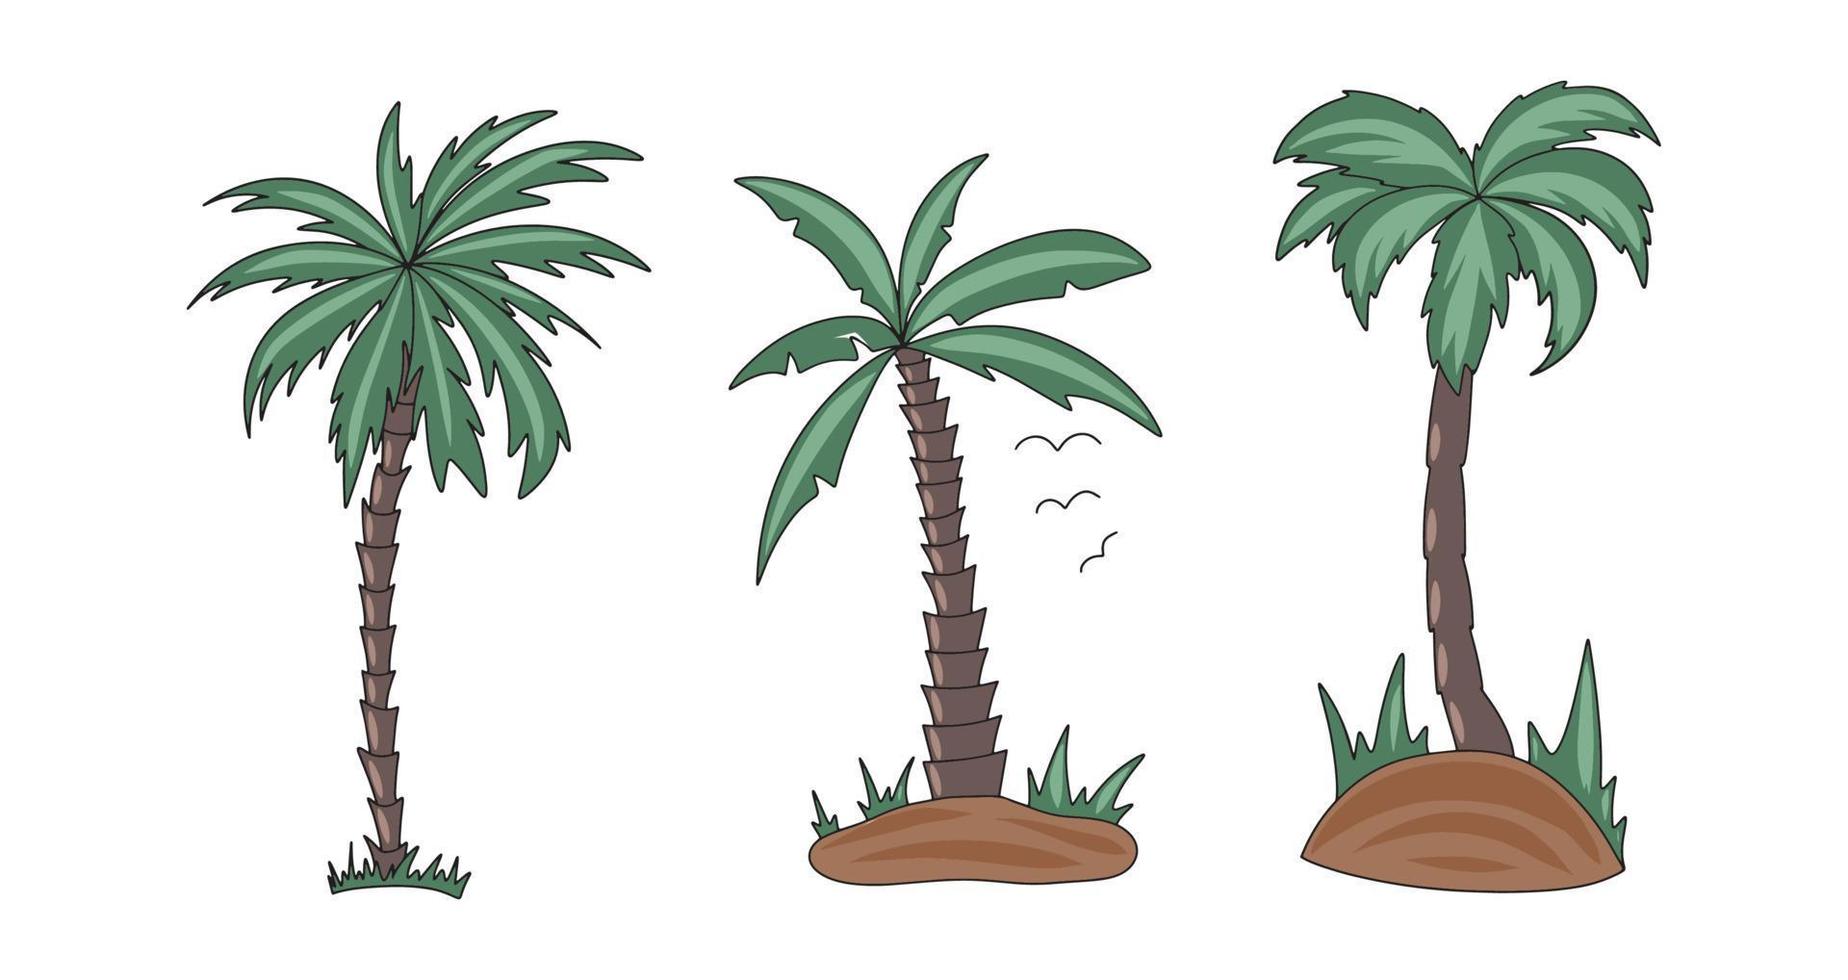 Vektorgrafiken verschiedener Formen von Palmen, die mit einem Strichumriss auf weißem Hintergrund gefärbt sind vektor